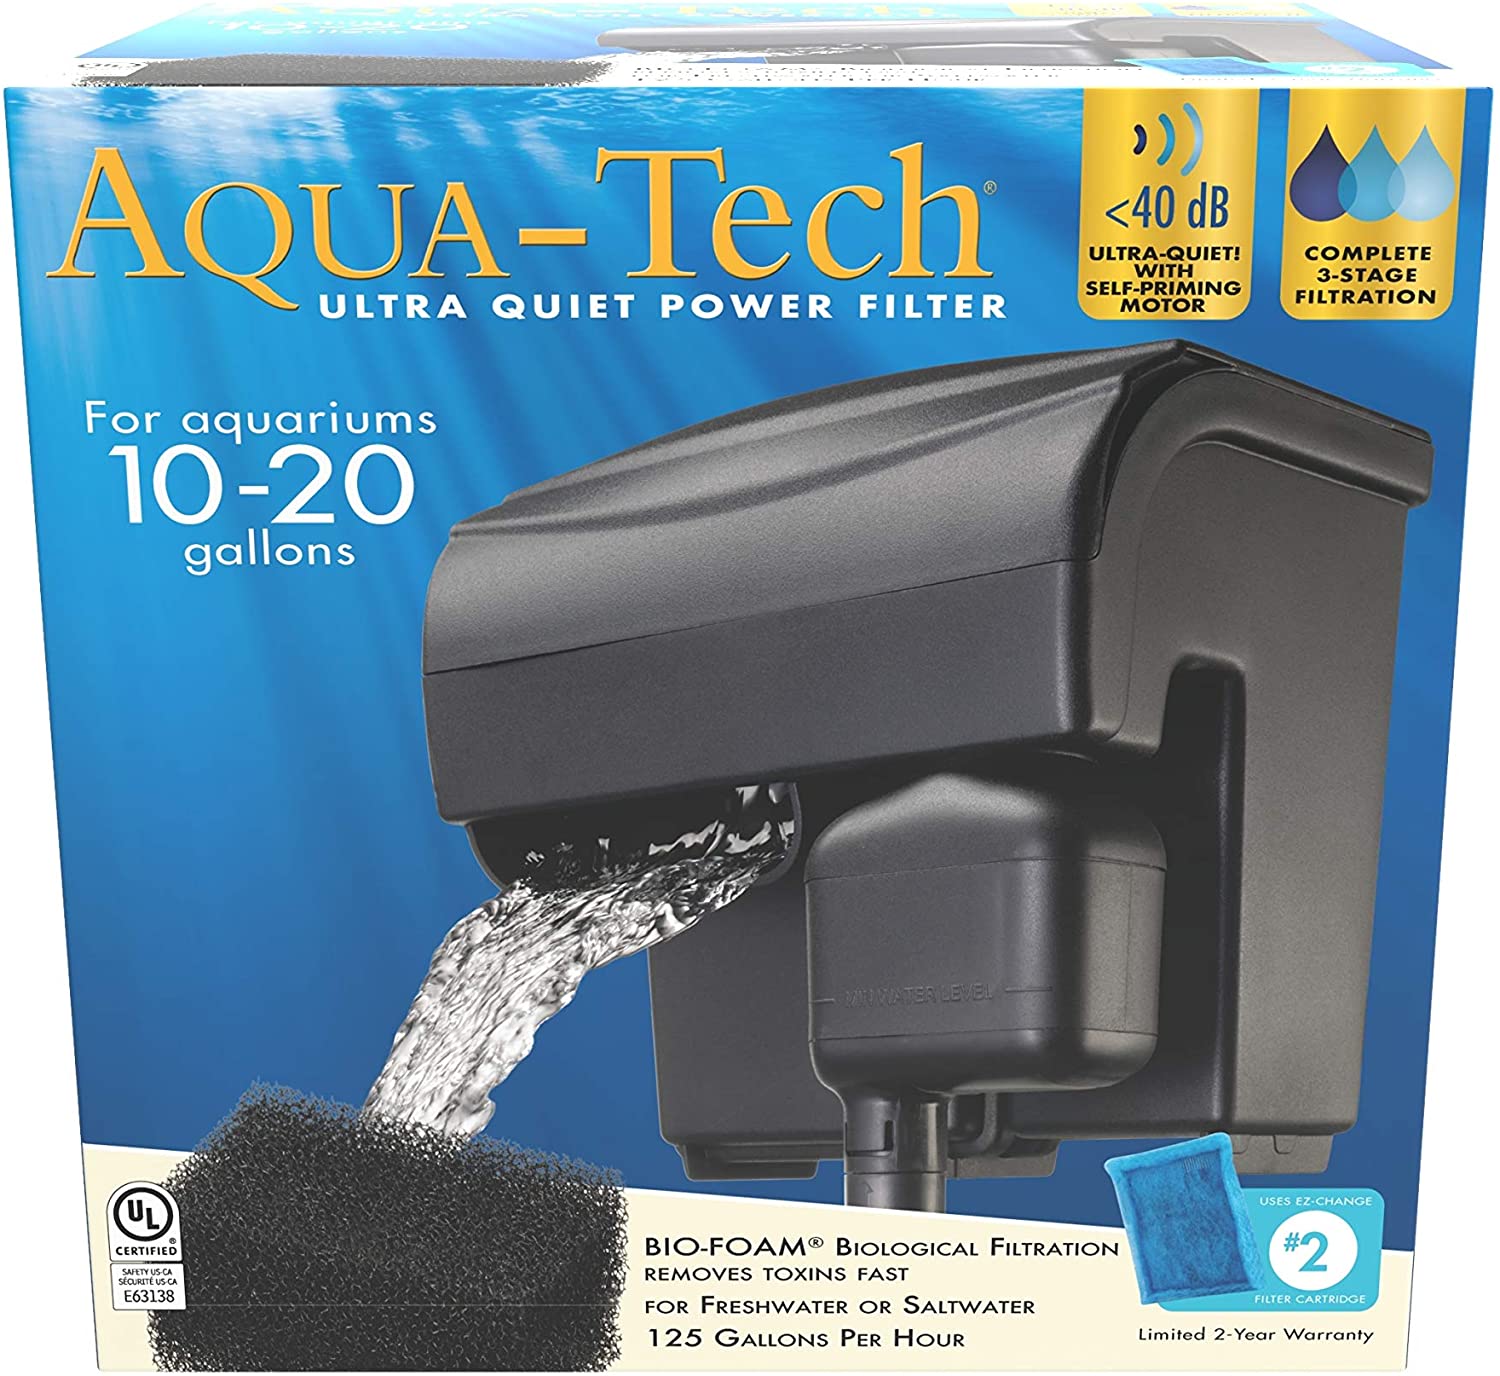 Aqua-Tech Power Filter